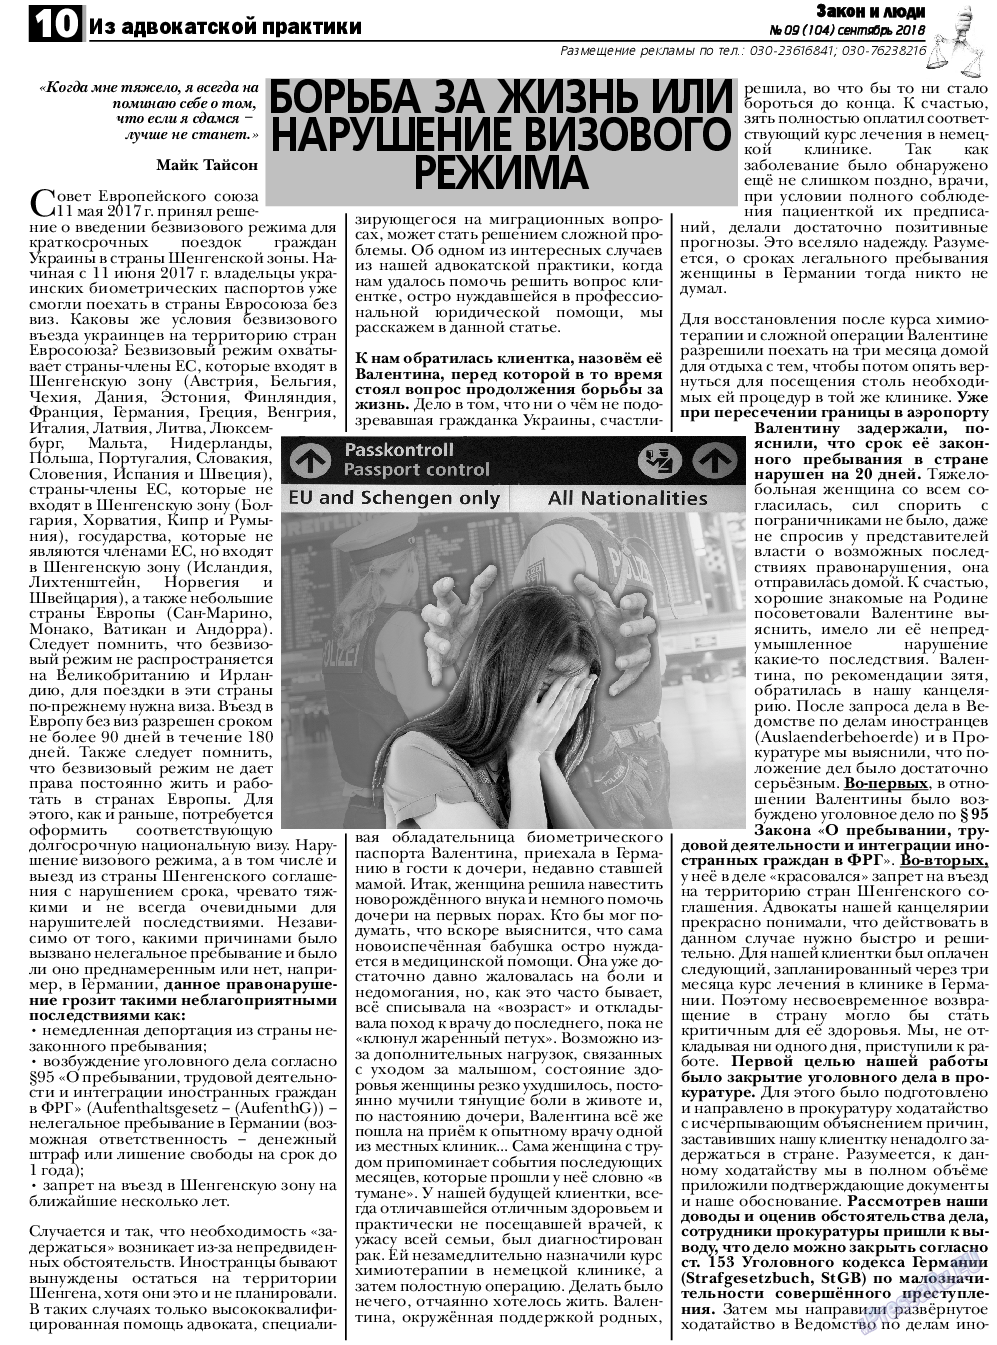 Закон и люди, газета. 2018 №9 стр.10